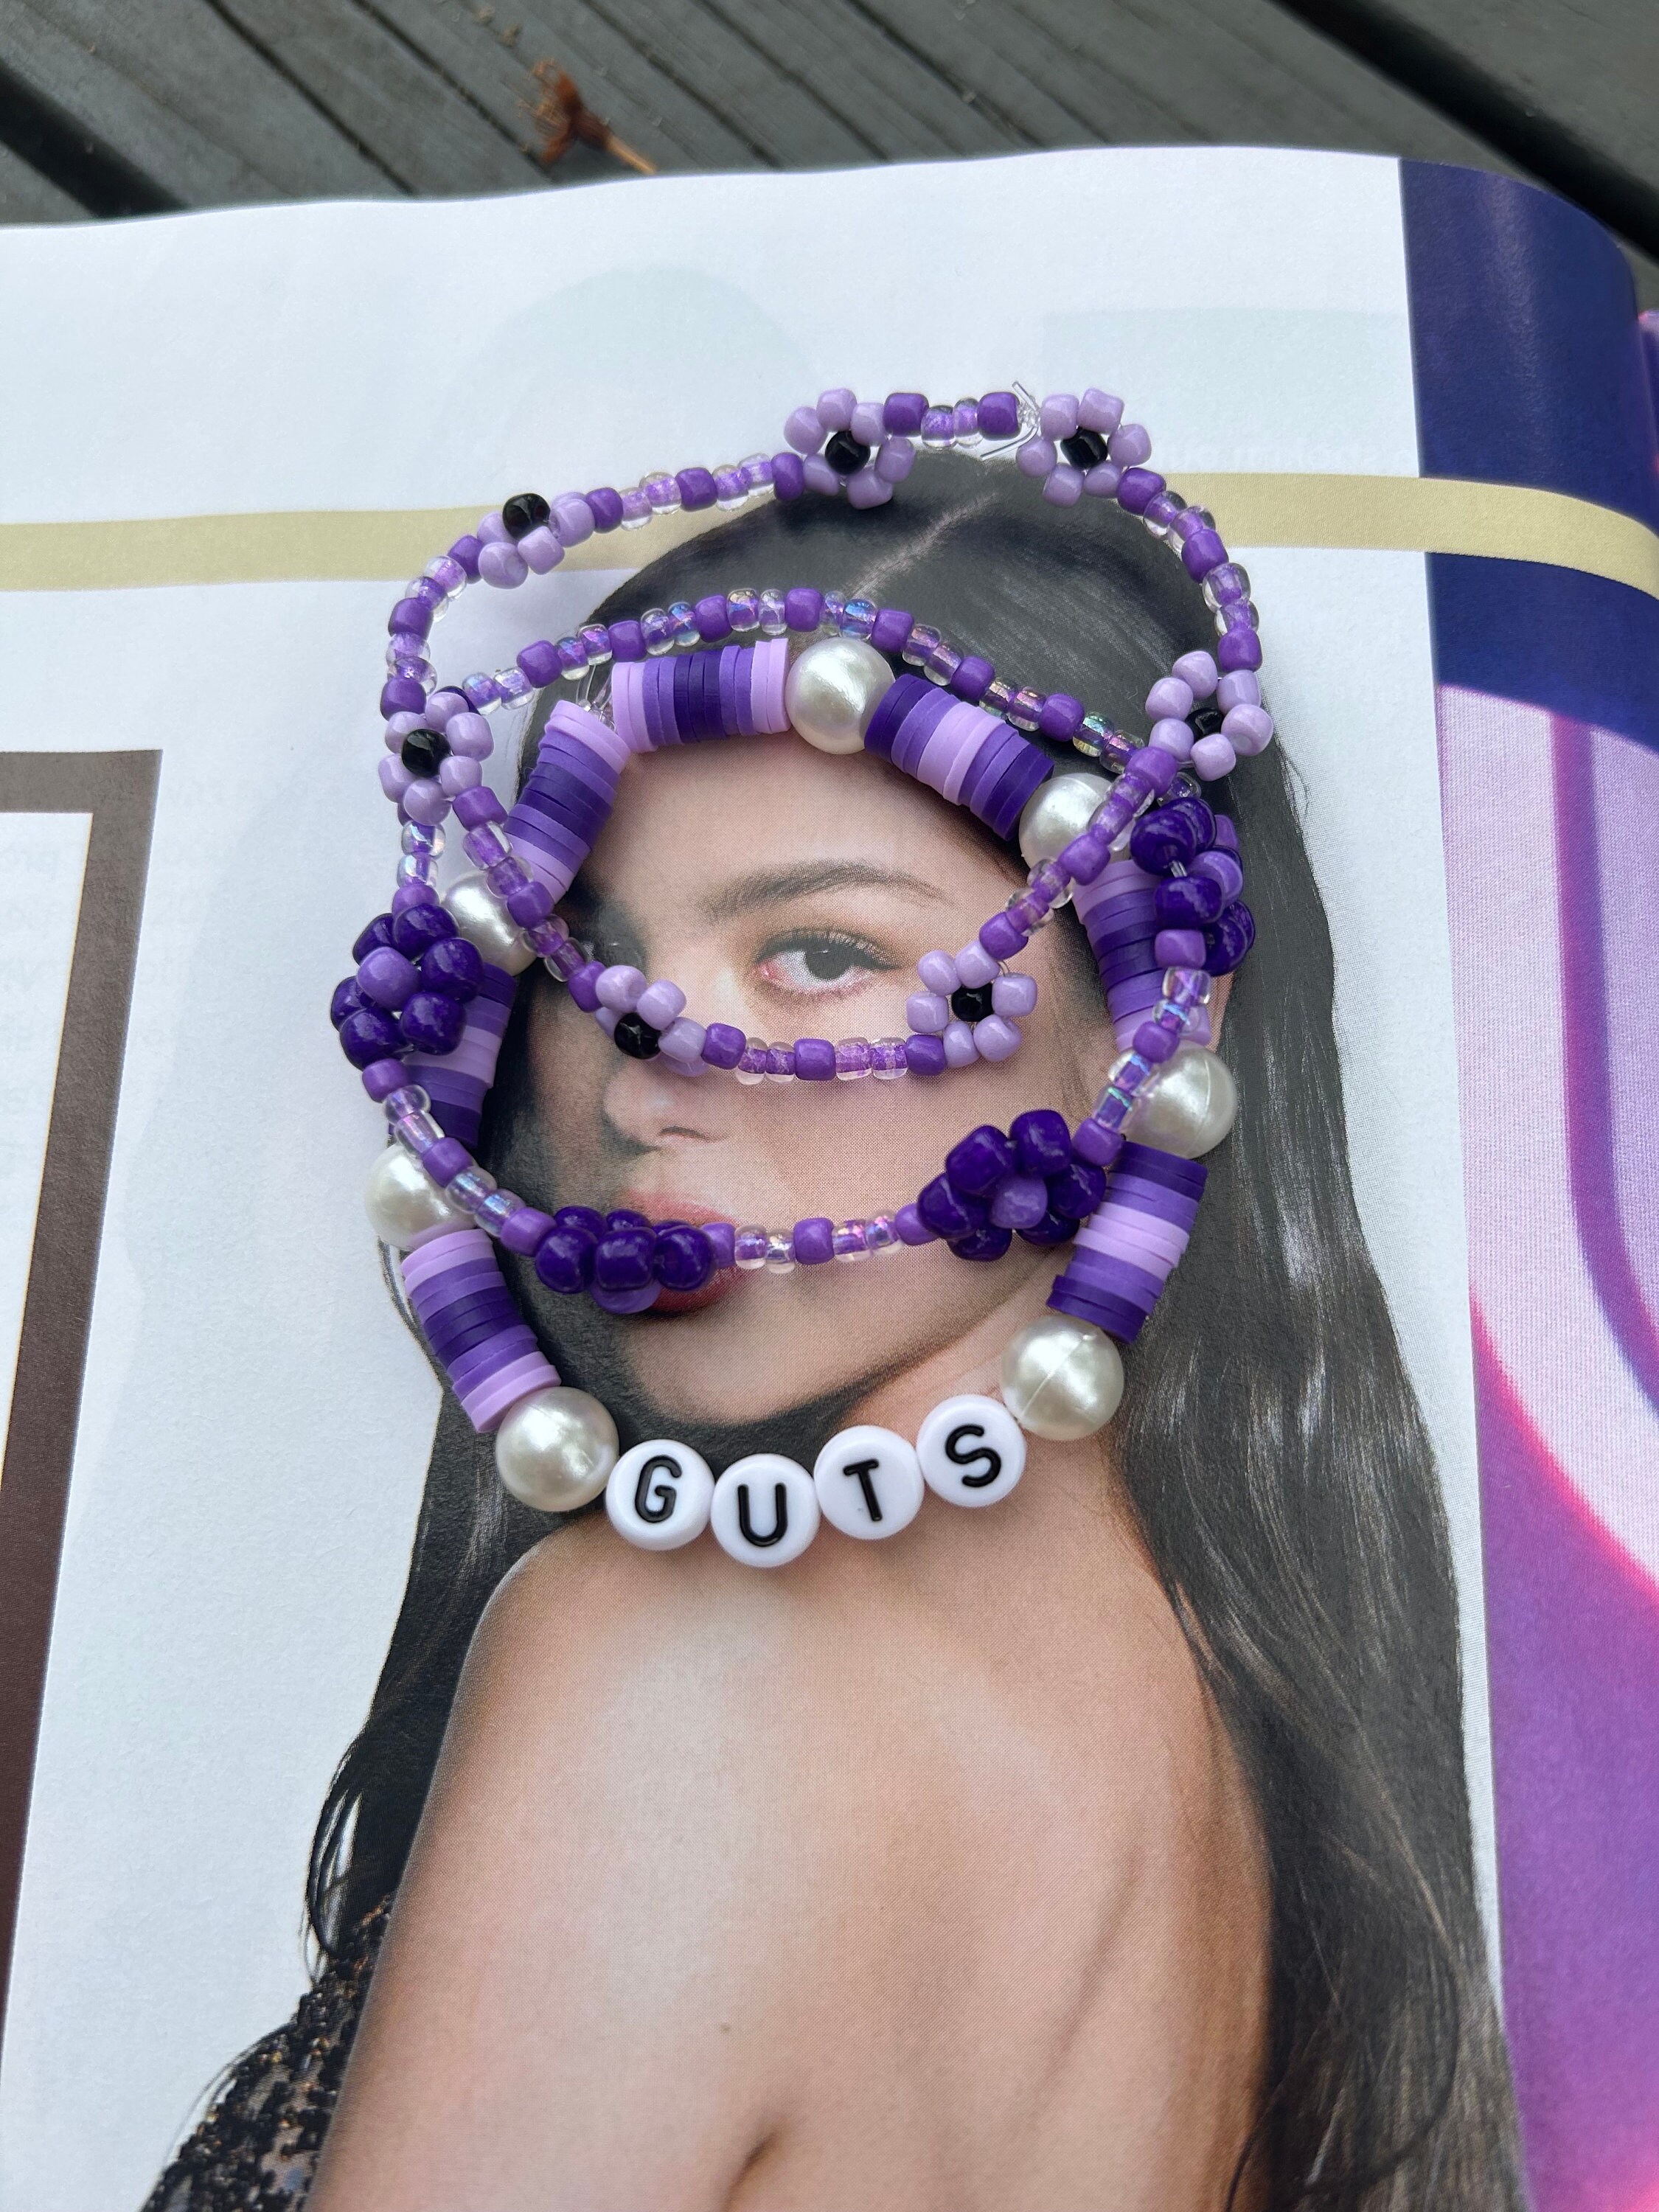 Beaded Olivia Rodrigo Inspired Bracelet Bundle Set of 3 